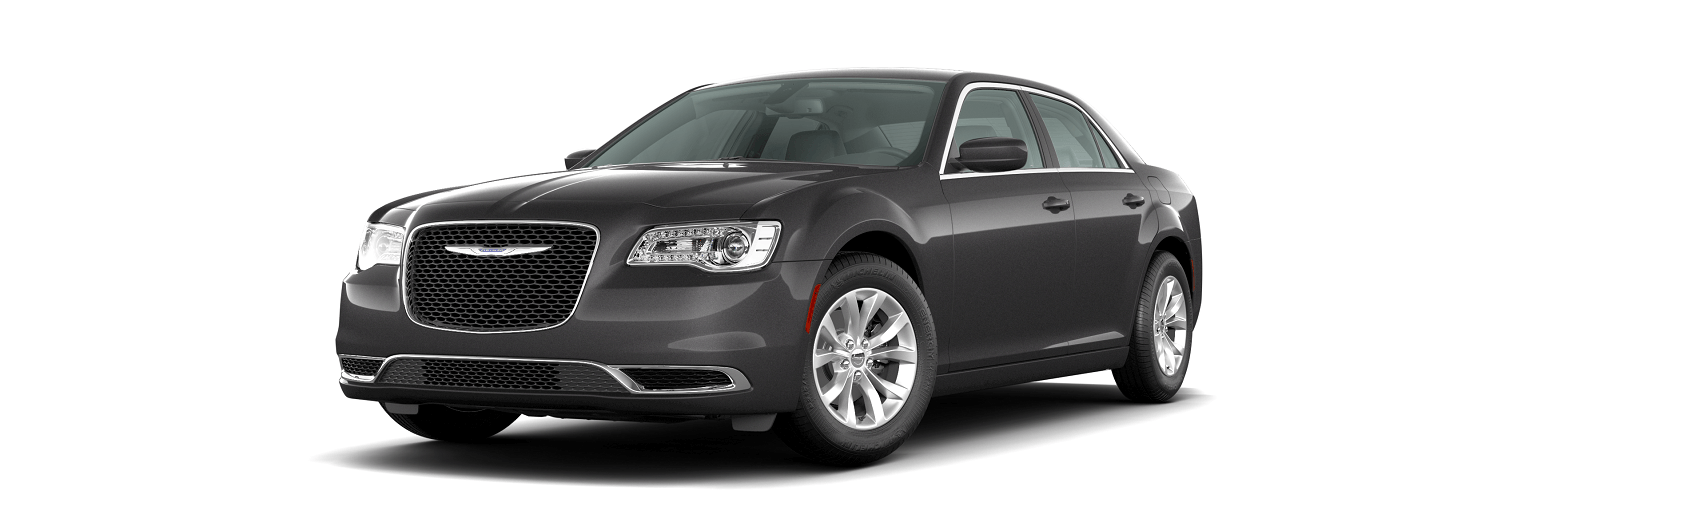 Chrysler 300 